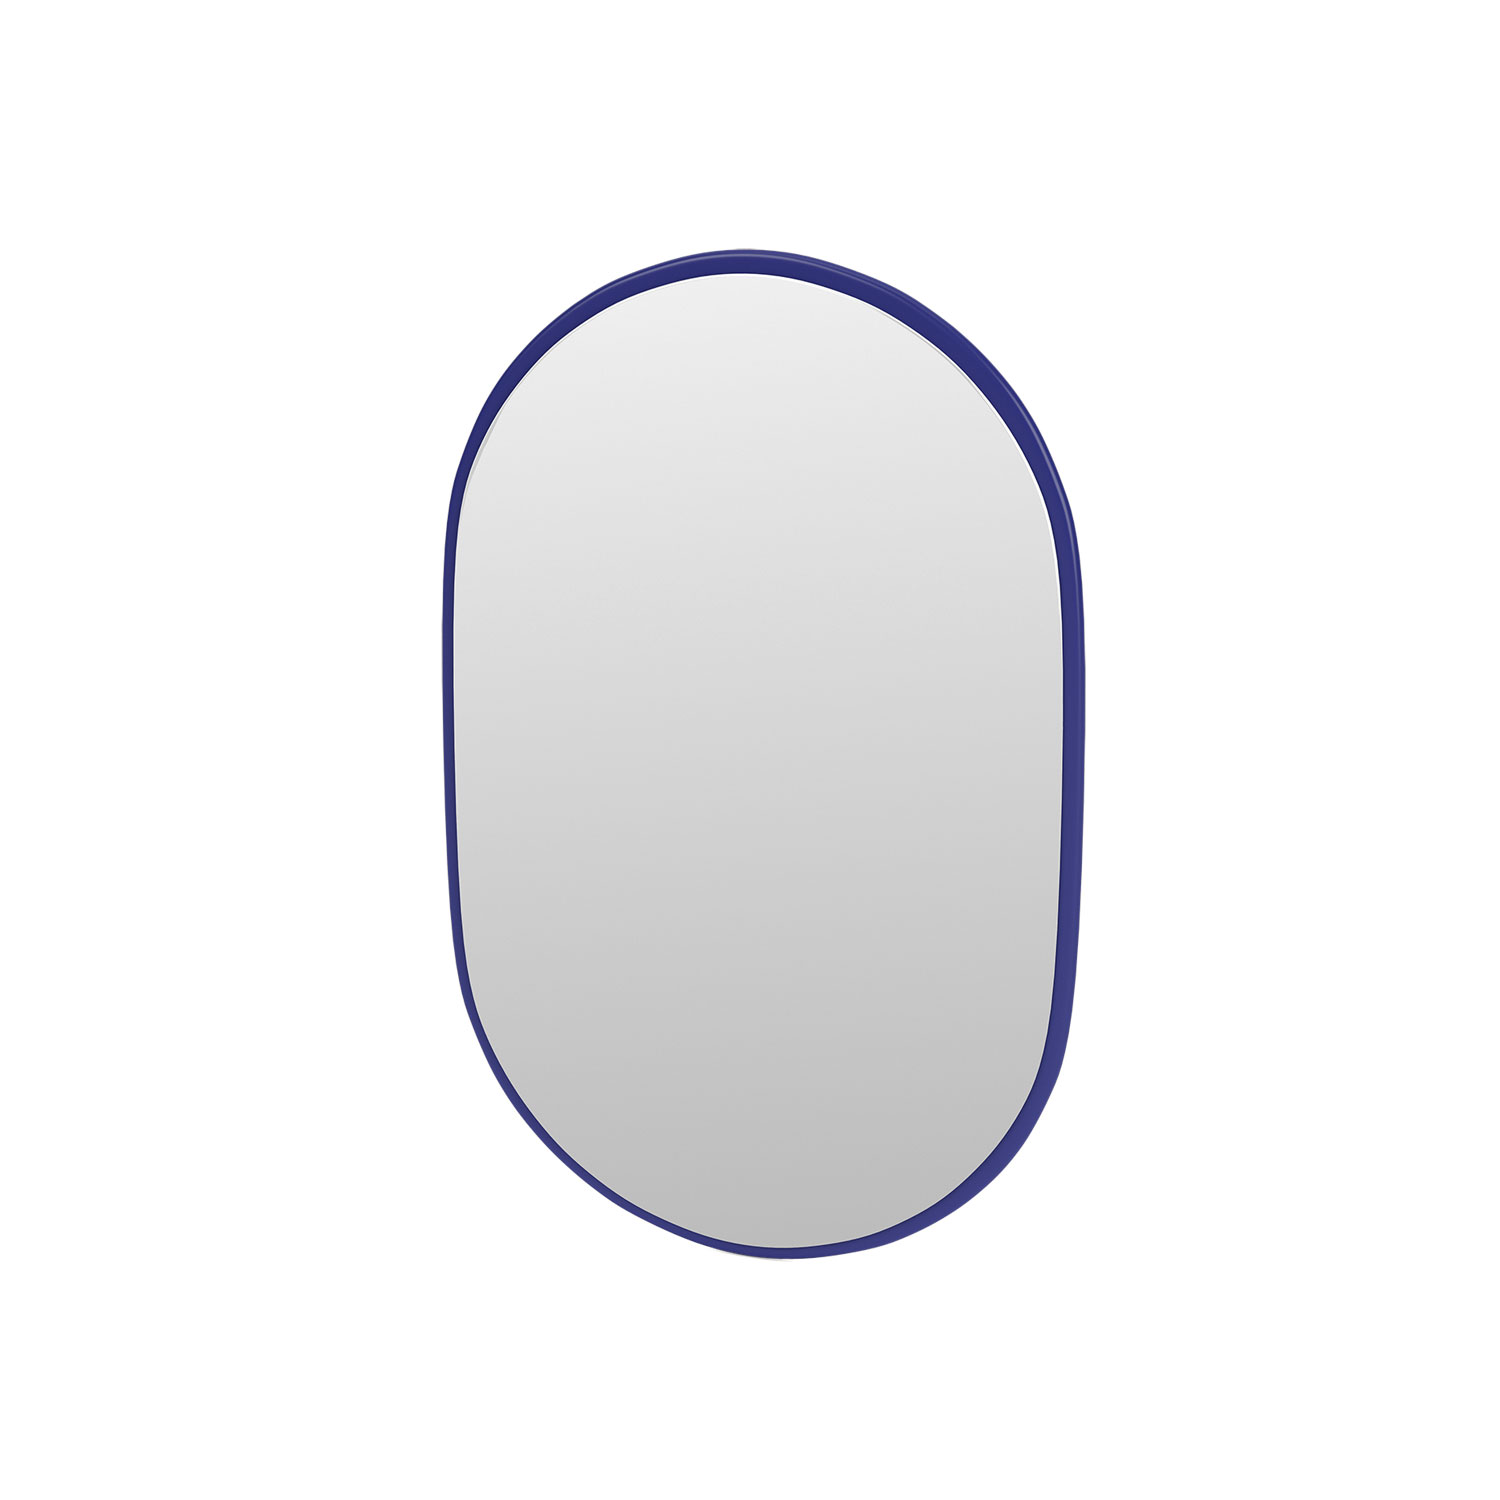 LOOK oval mirror, Monarch